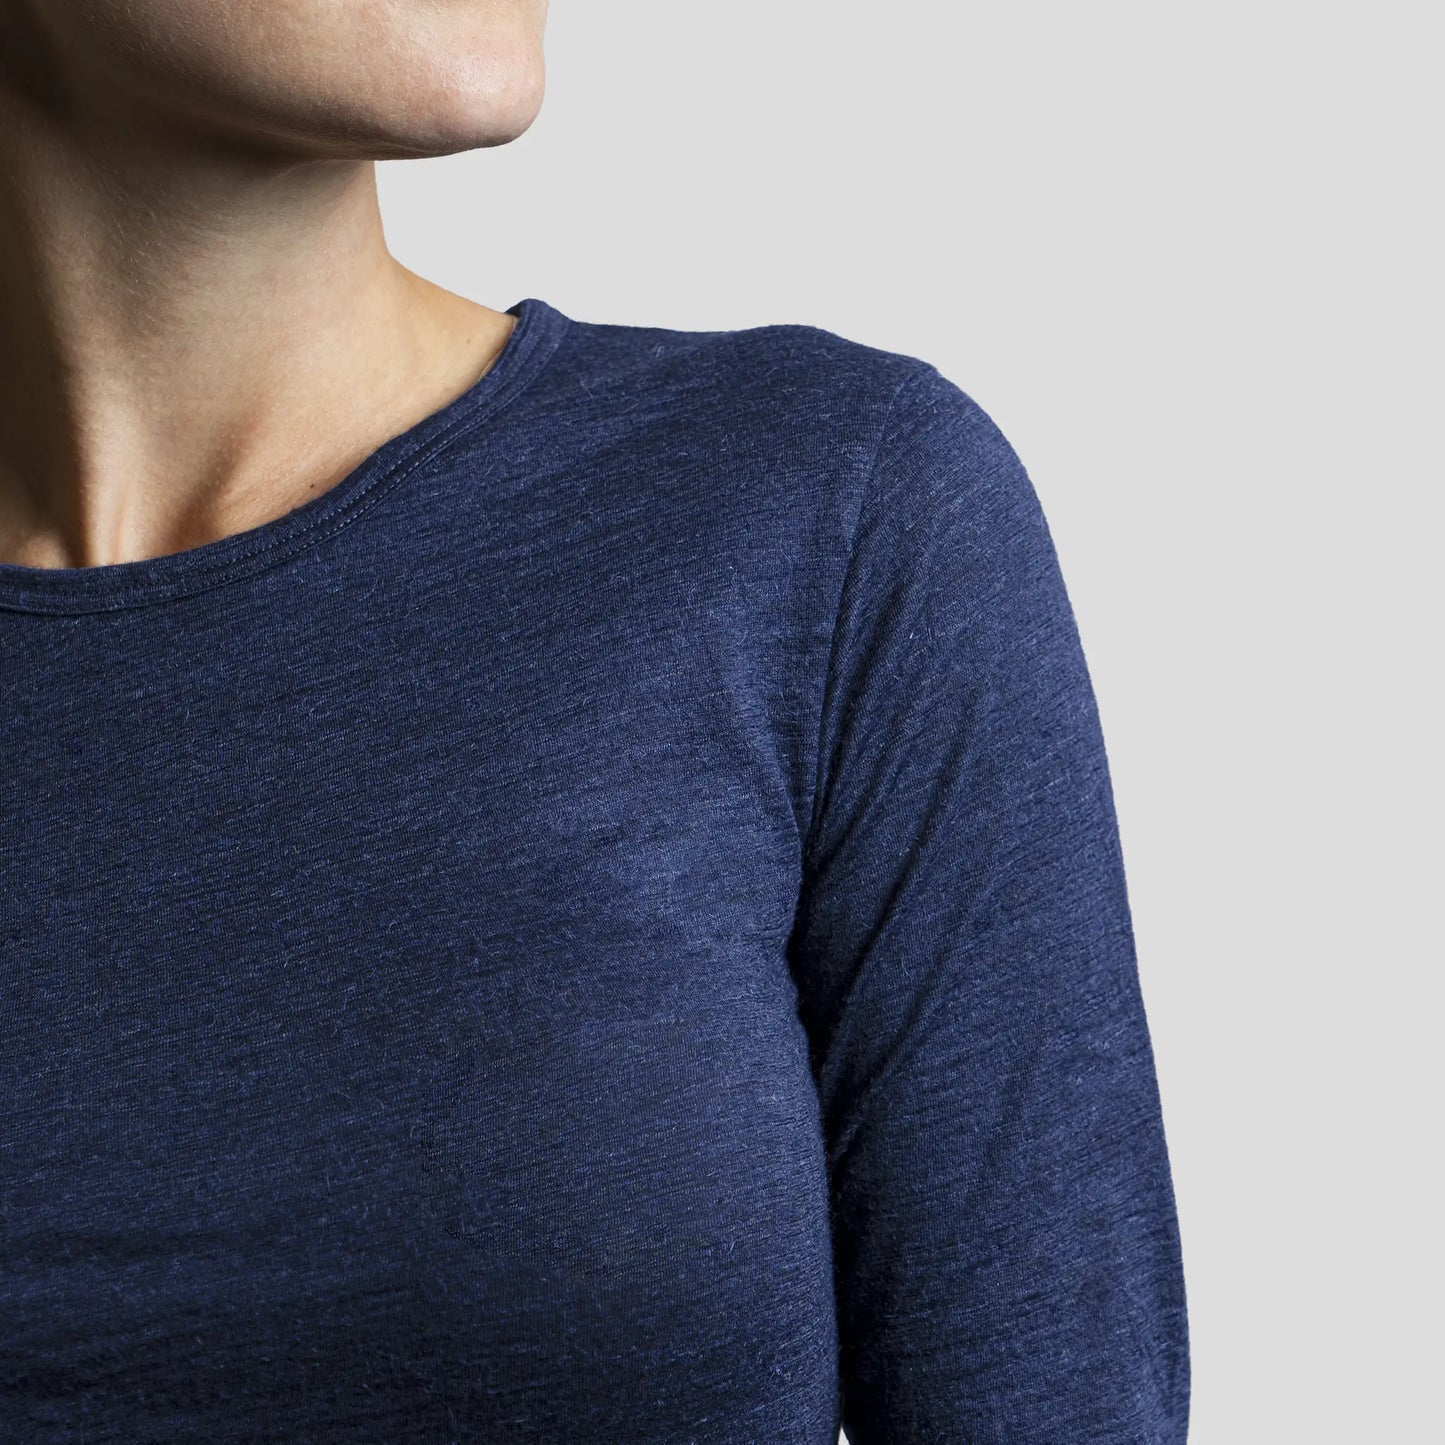 Women's Alpaca Wool Long Sleeve Shirt: 160 Ultralight color Navy Blue